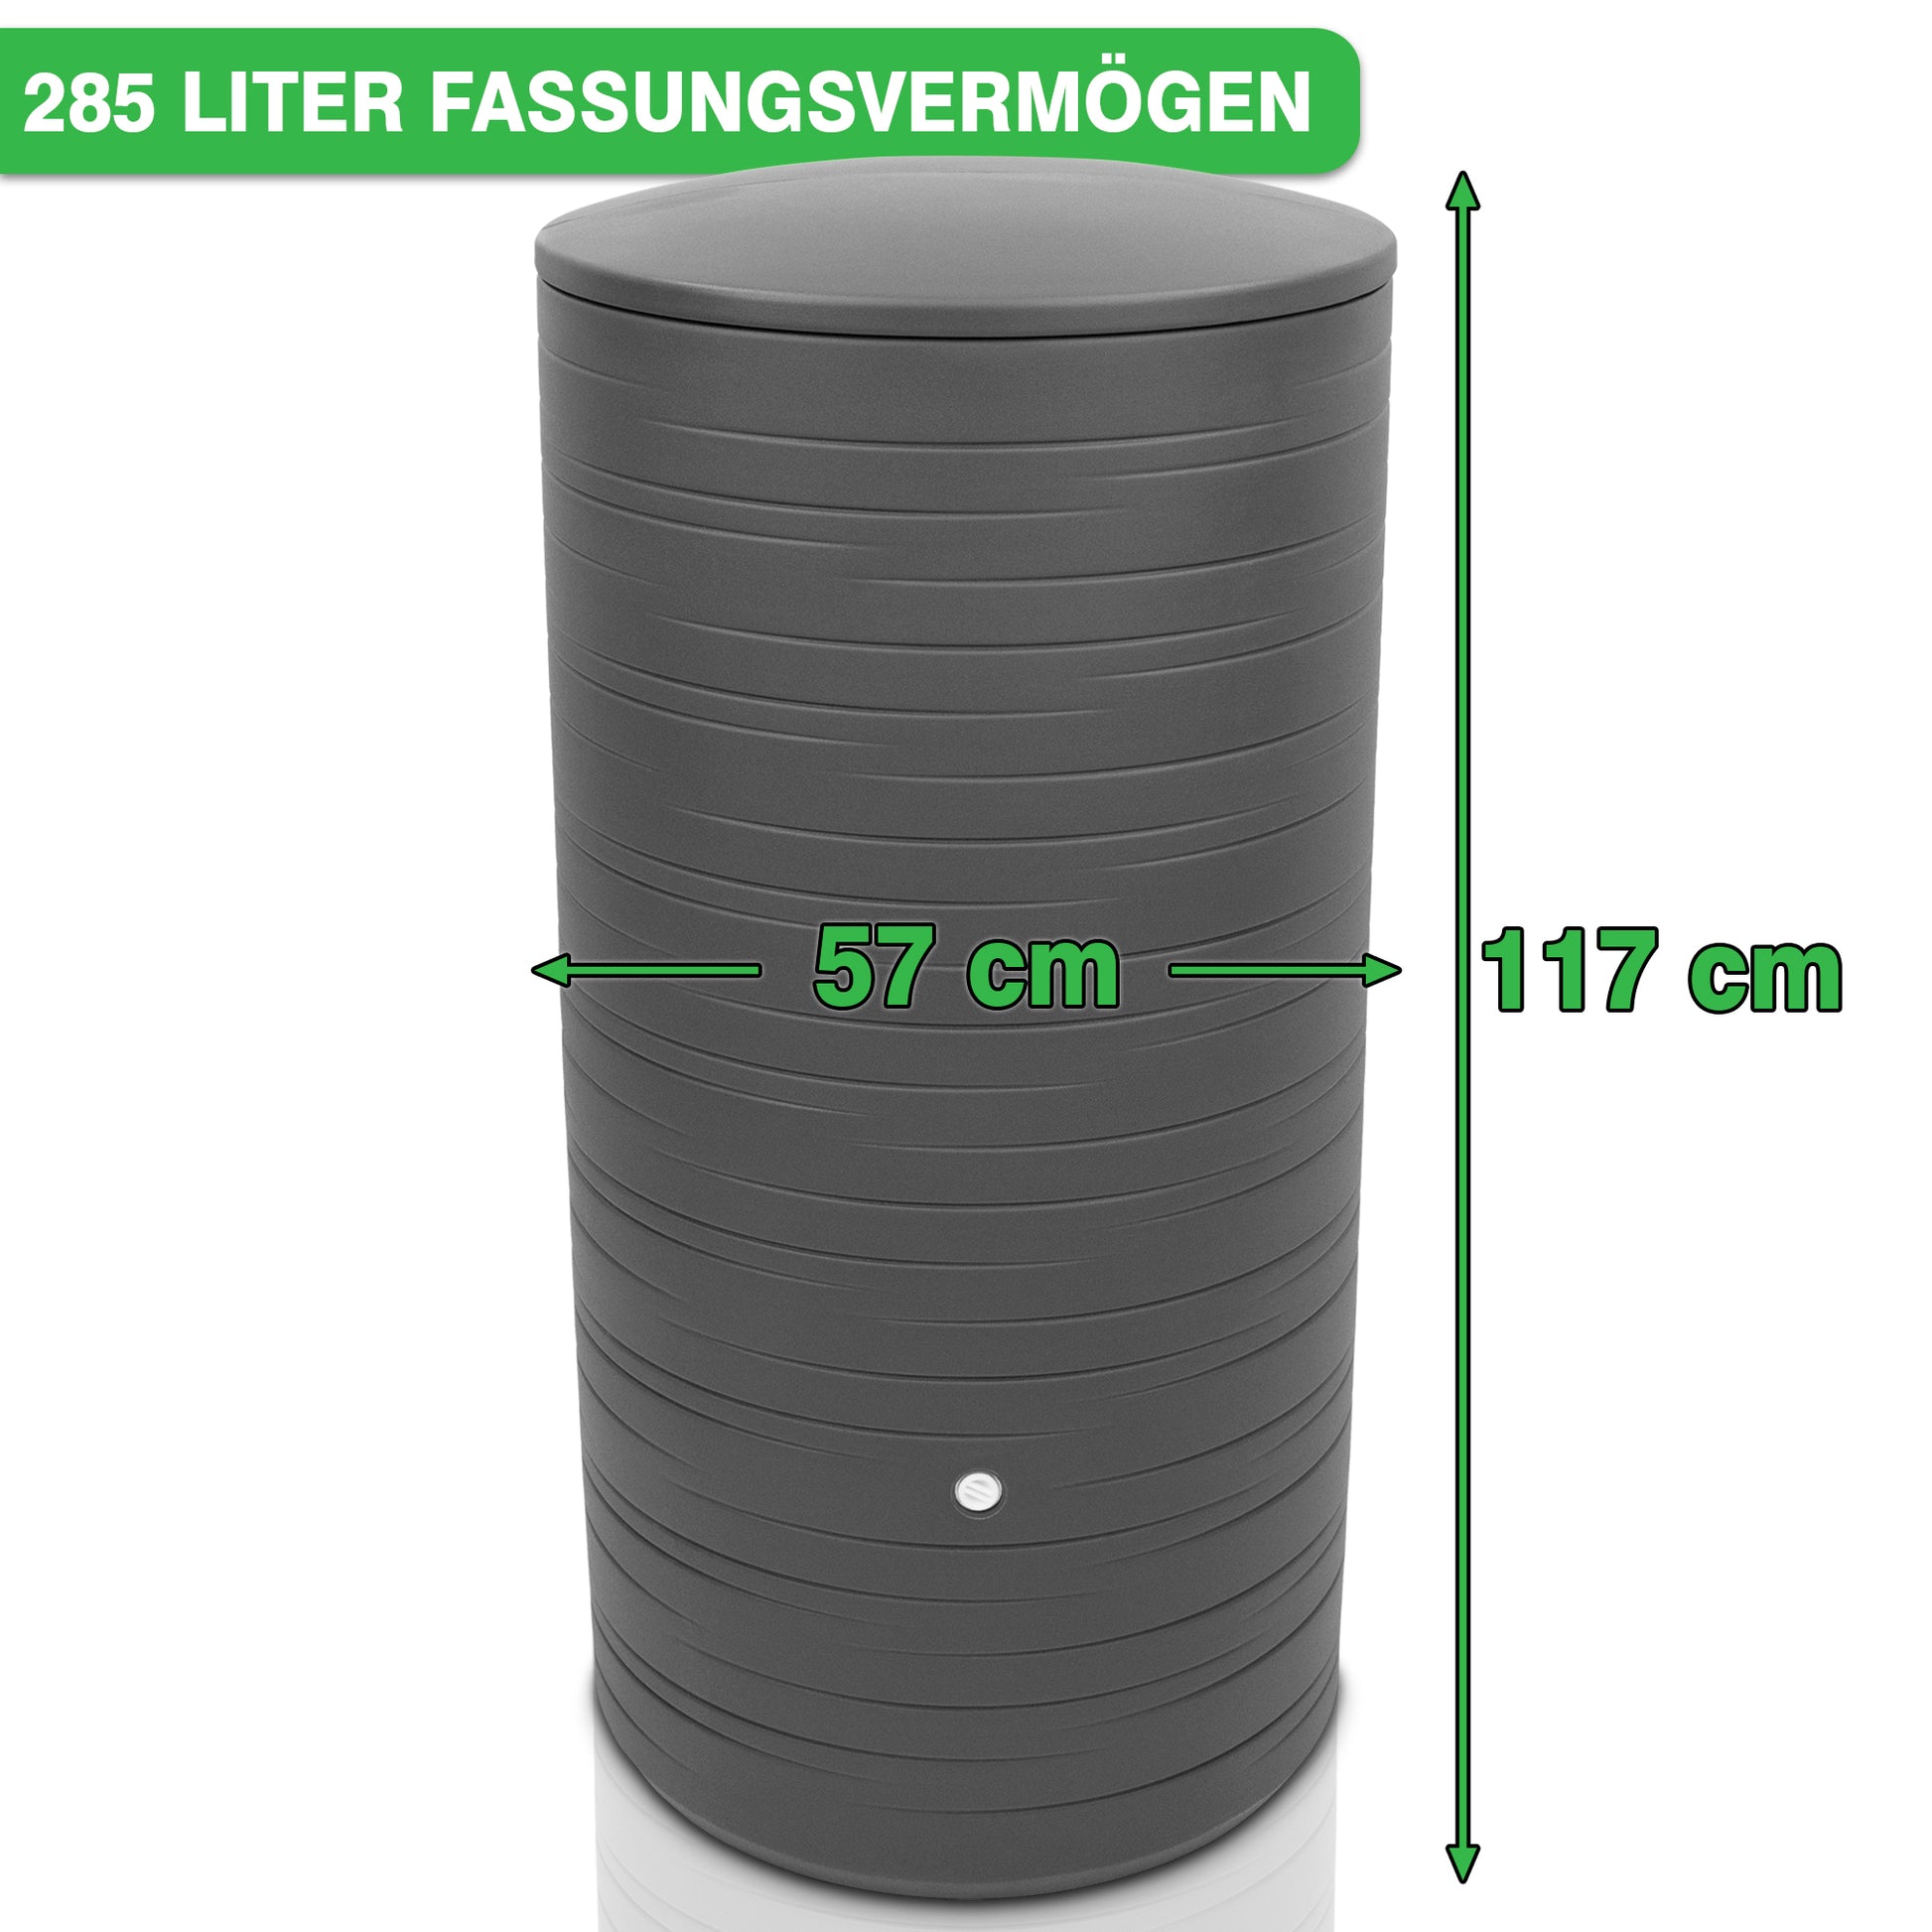 YourCasa Regentonne 280 Liter [PureRain] von yourcasa-de, misst 117 cm in der Höhe und 57 cm im Durchmesser.